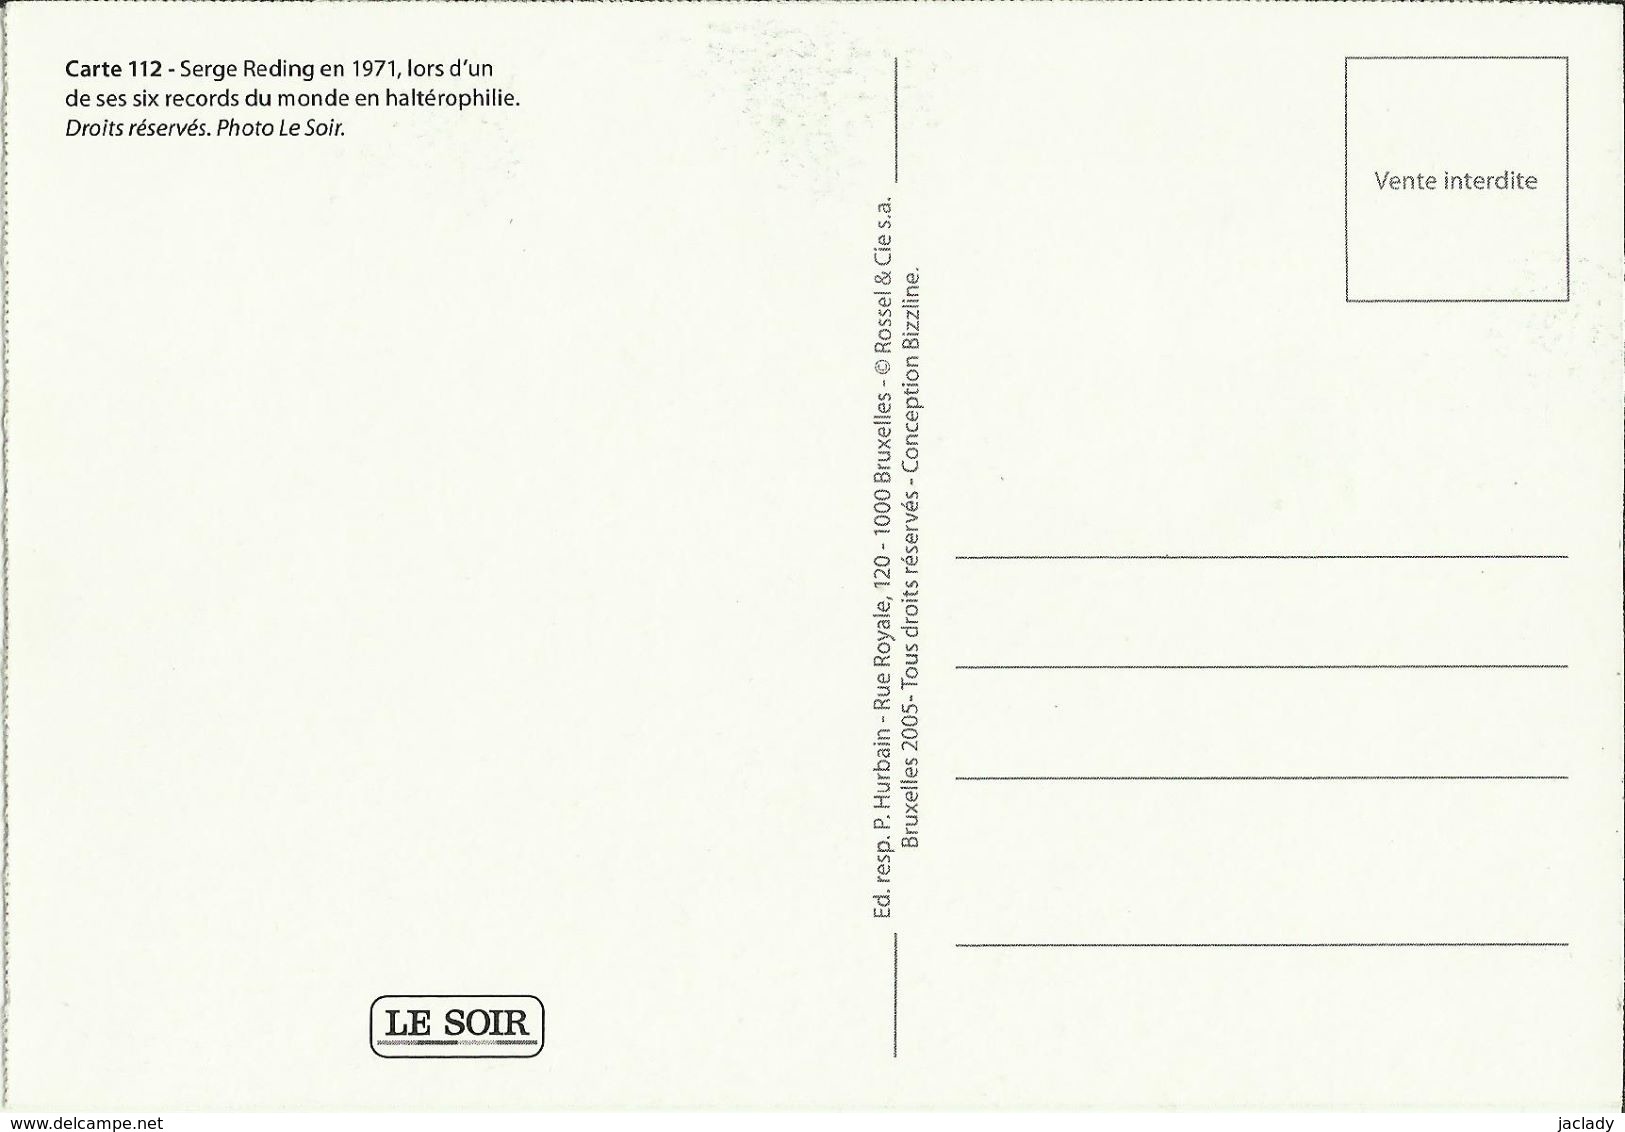 BELGIQUE - Carte N° 112 Du SOIR -- Serge Reding En 1971, Lors D'un De Ses 6 Records Du Monde En Haltérophilie. - Weightlifting